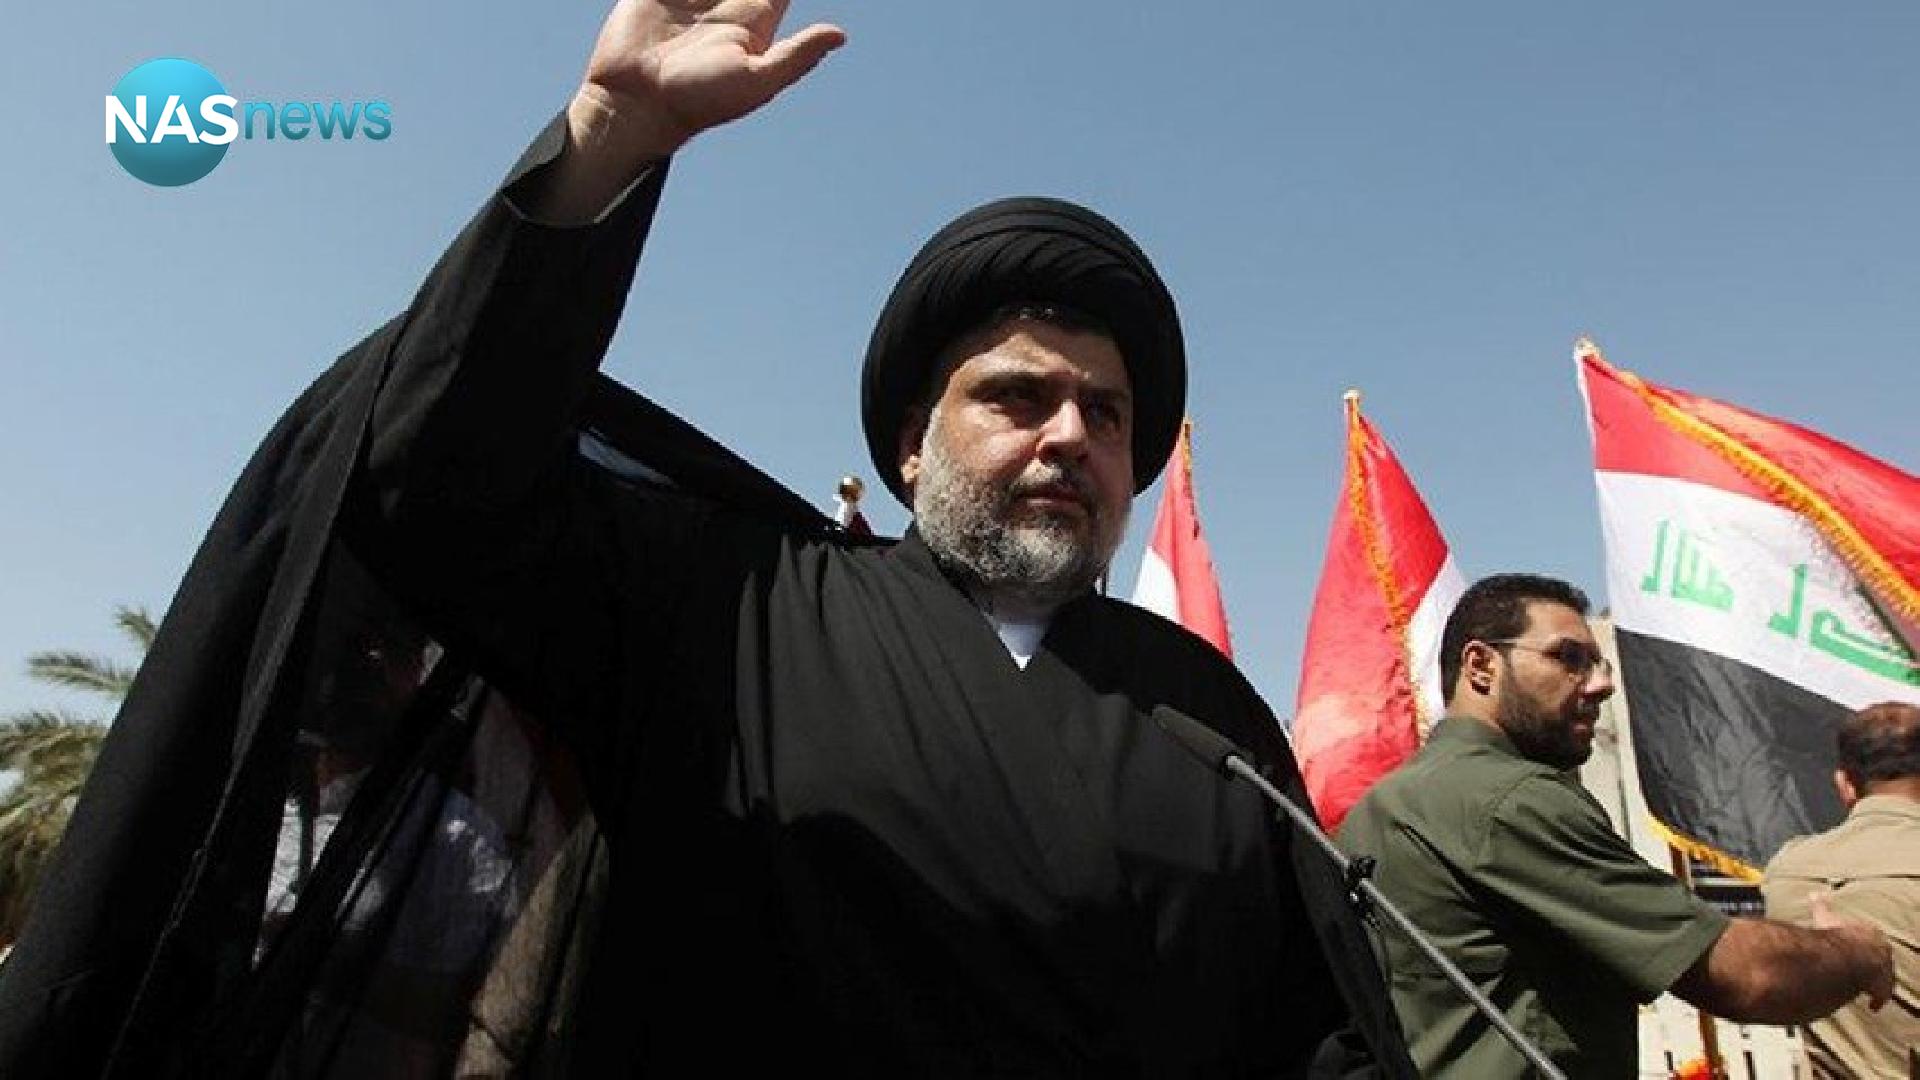 صورة من هو الزعيم الشيعي مقتدى الصدر الذي أثار قراره بالاعتزال توترا في البلاد؟